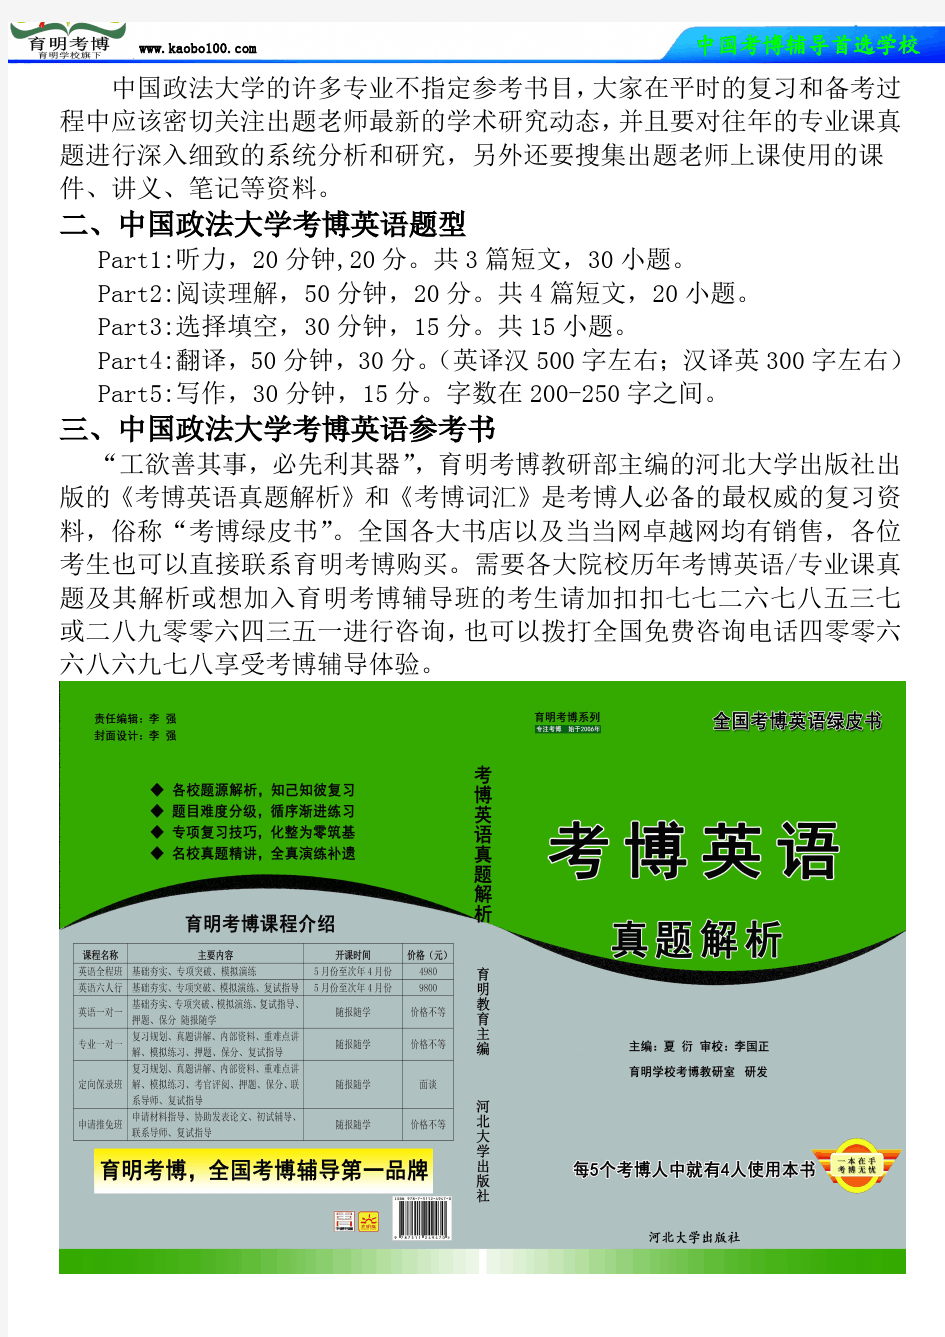 中国政法大学民商经济法学院经济法学考博真题-参考书-分数线-分析资料-复习方法-育明考博